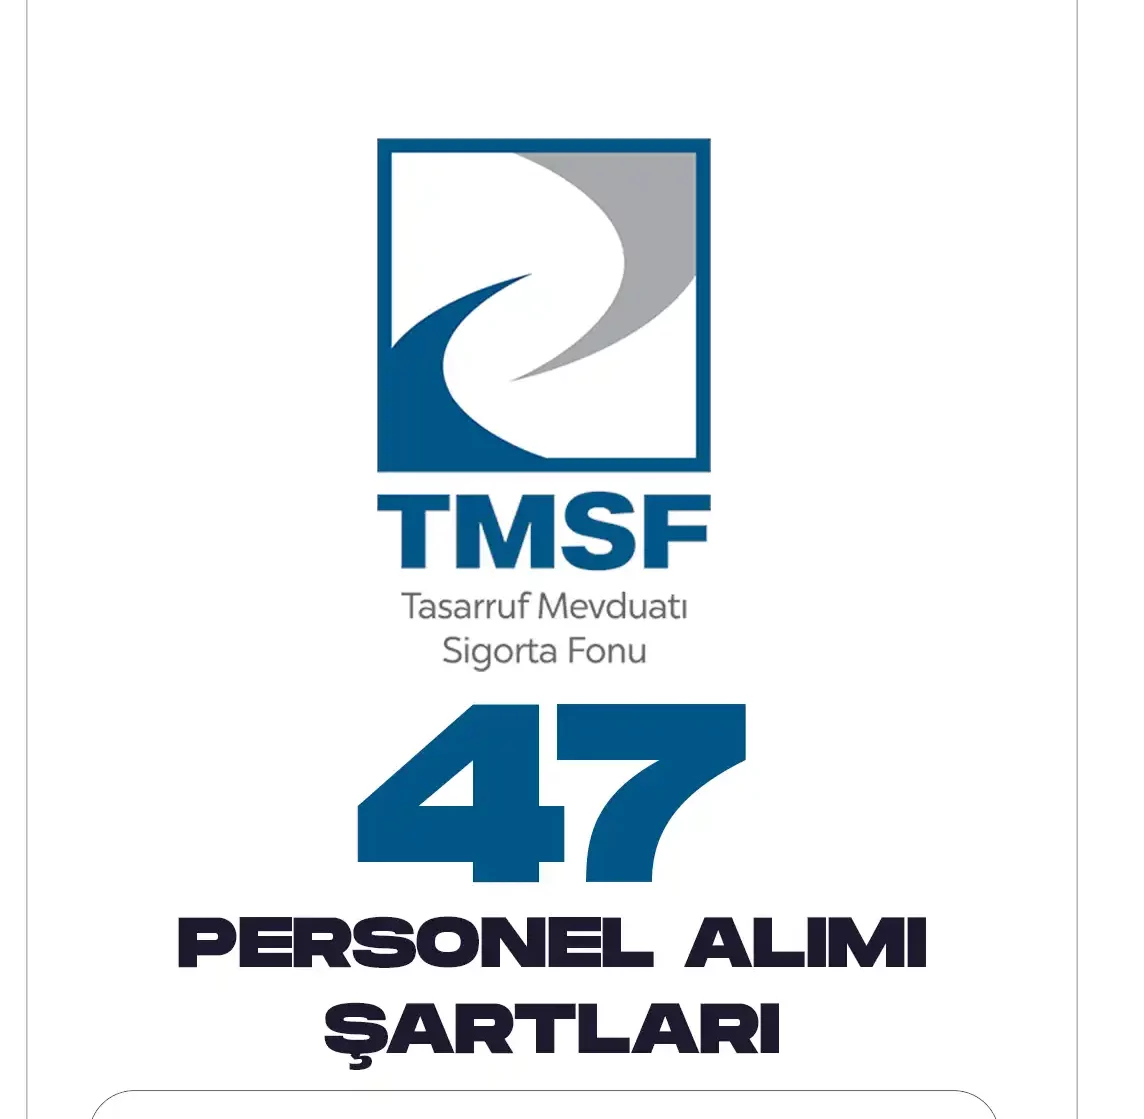 TMSF personel alımı başvuruları devam ediyor.